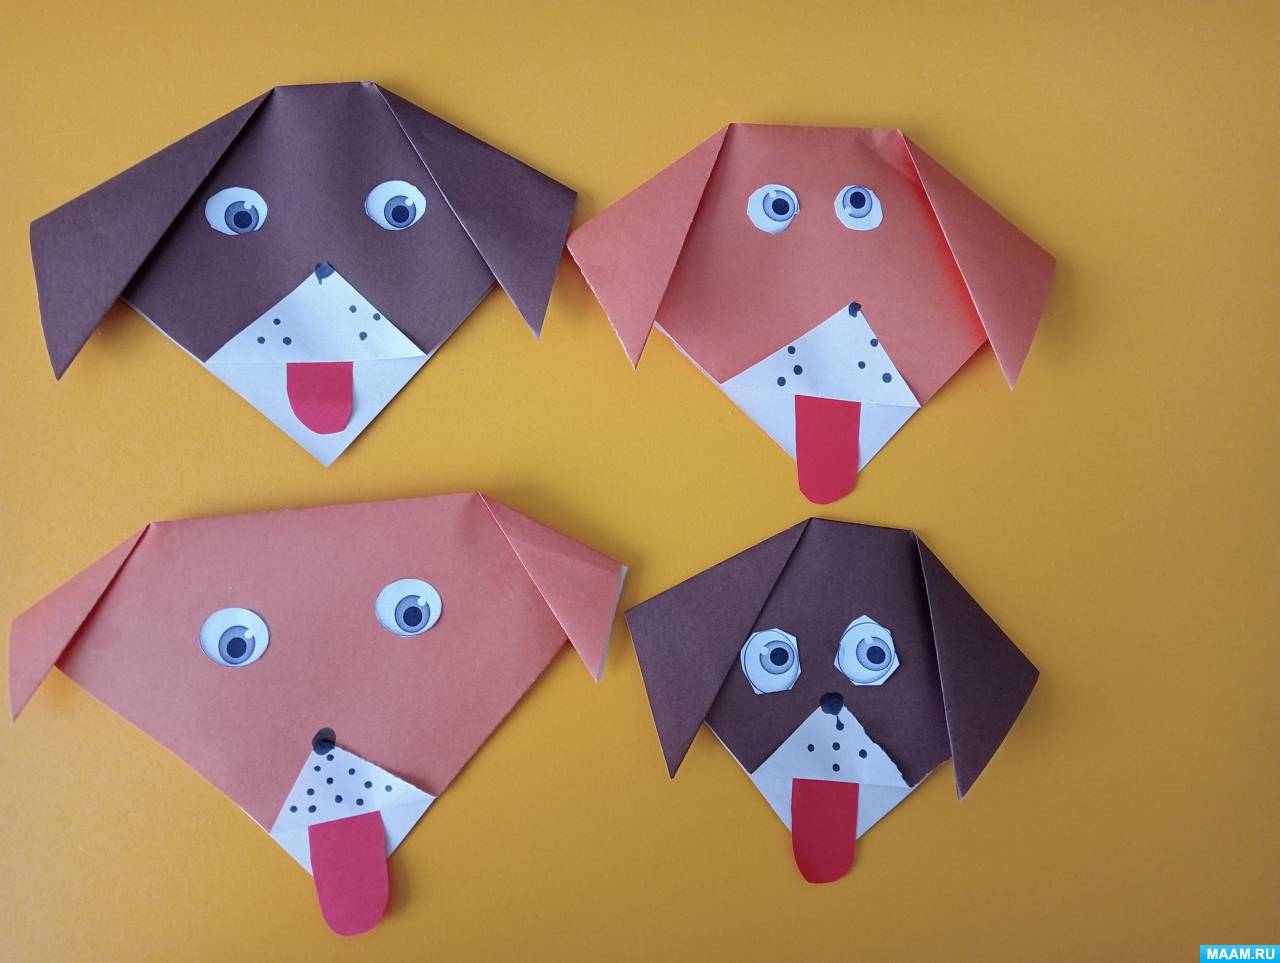 Проект «Волшебный мир оригами в развитии детей» | Василькова Марина Александровна. Работа №290596